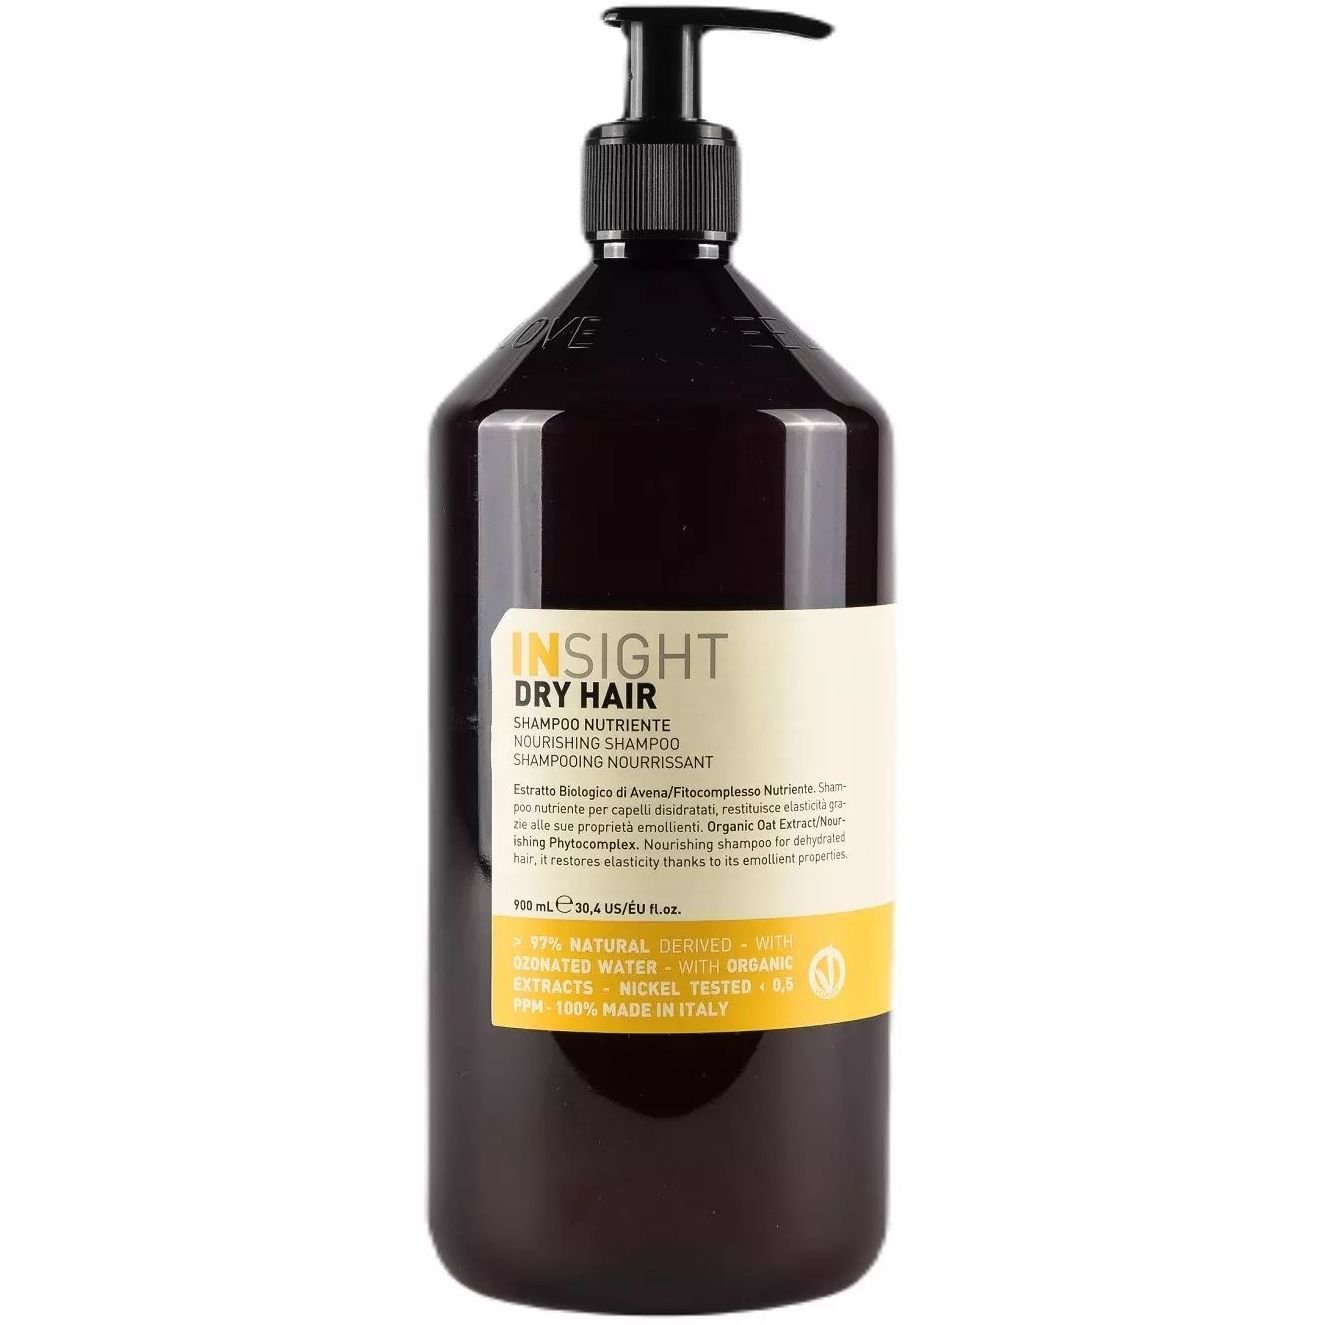 Шампунь Insight Dry Hair Nourishing Shampoo питательный для сухих волос 900 мл - фото 1